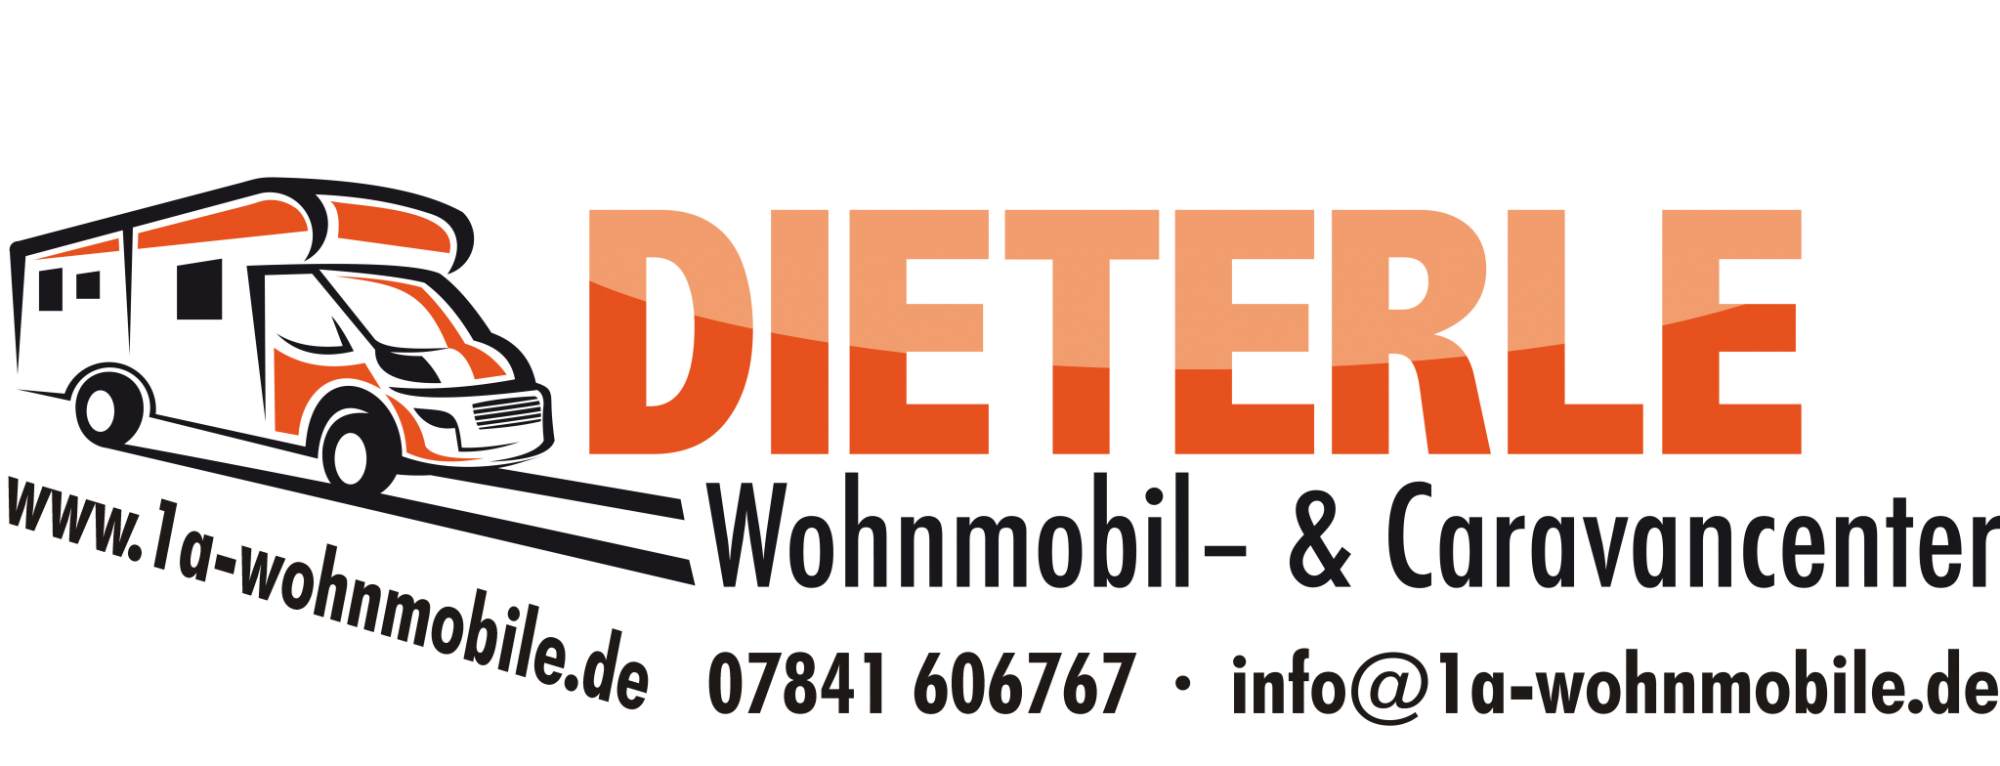 Dieterle GmbH & Co. KG